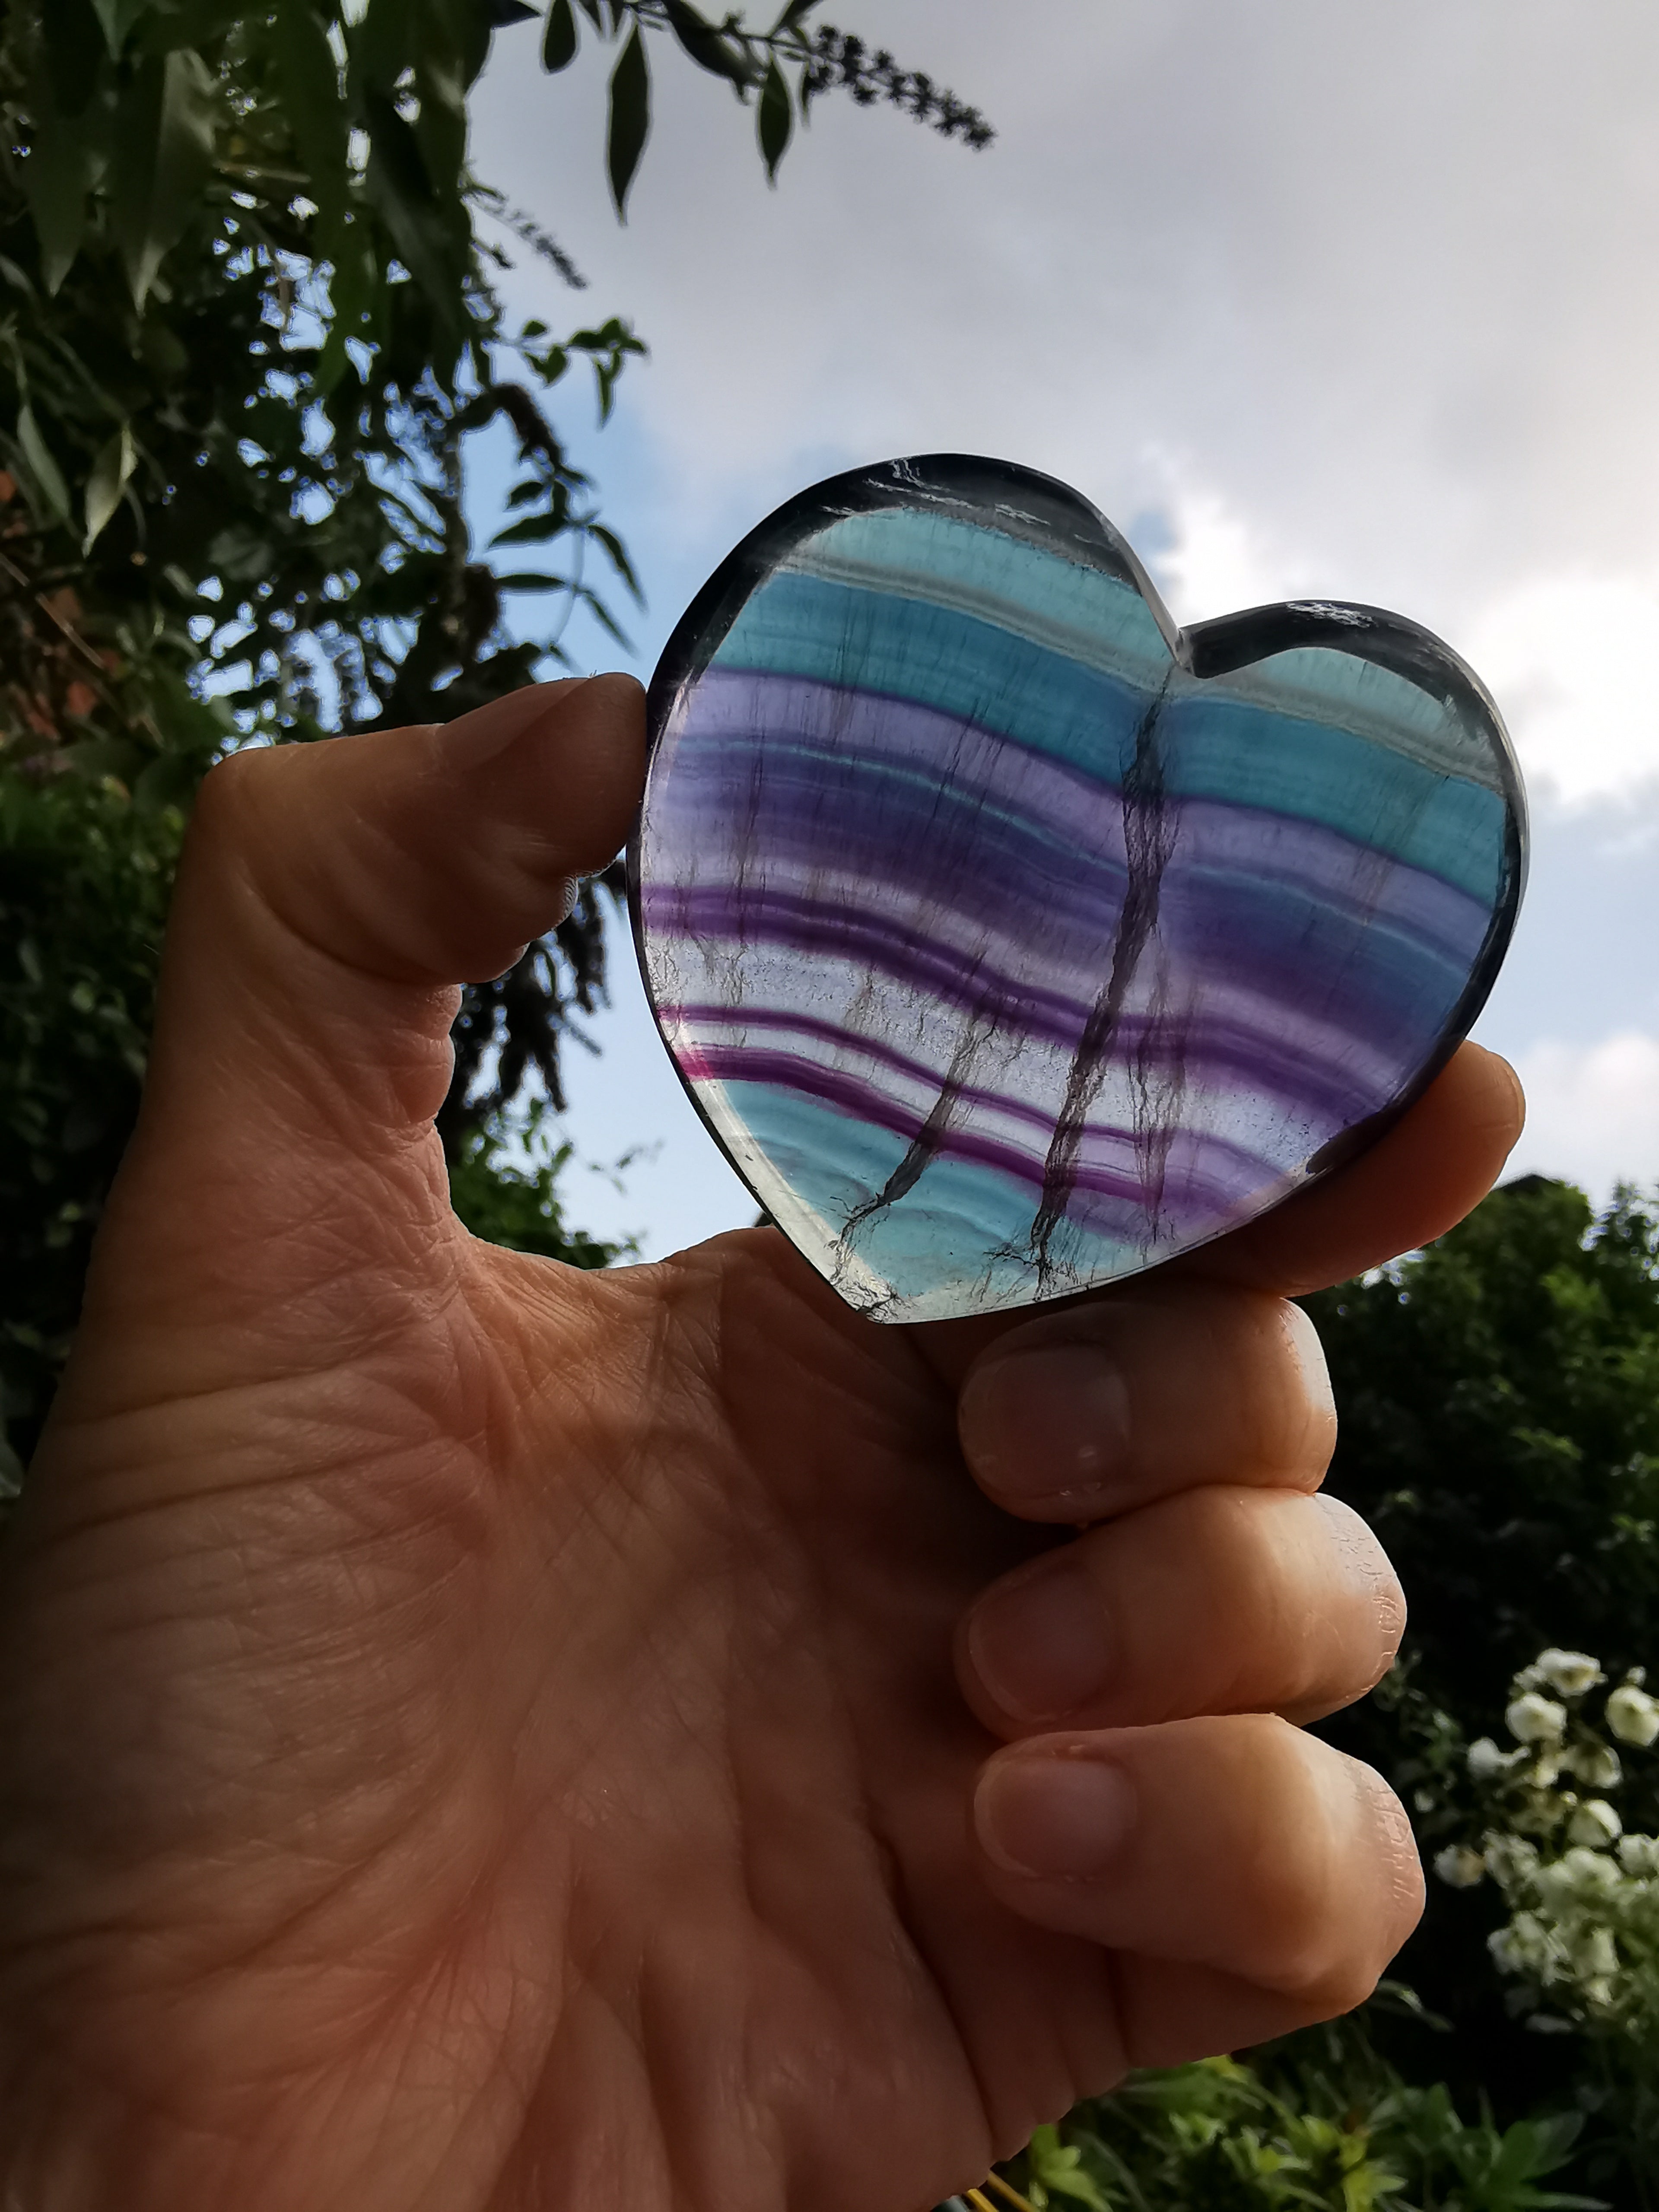 Fluorite Heart - 6cm (width)